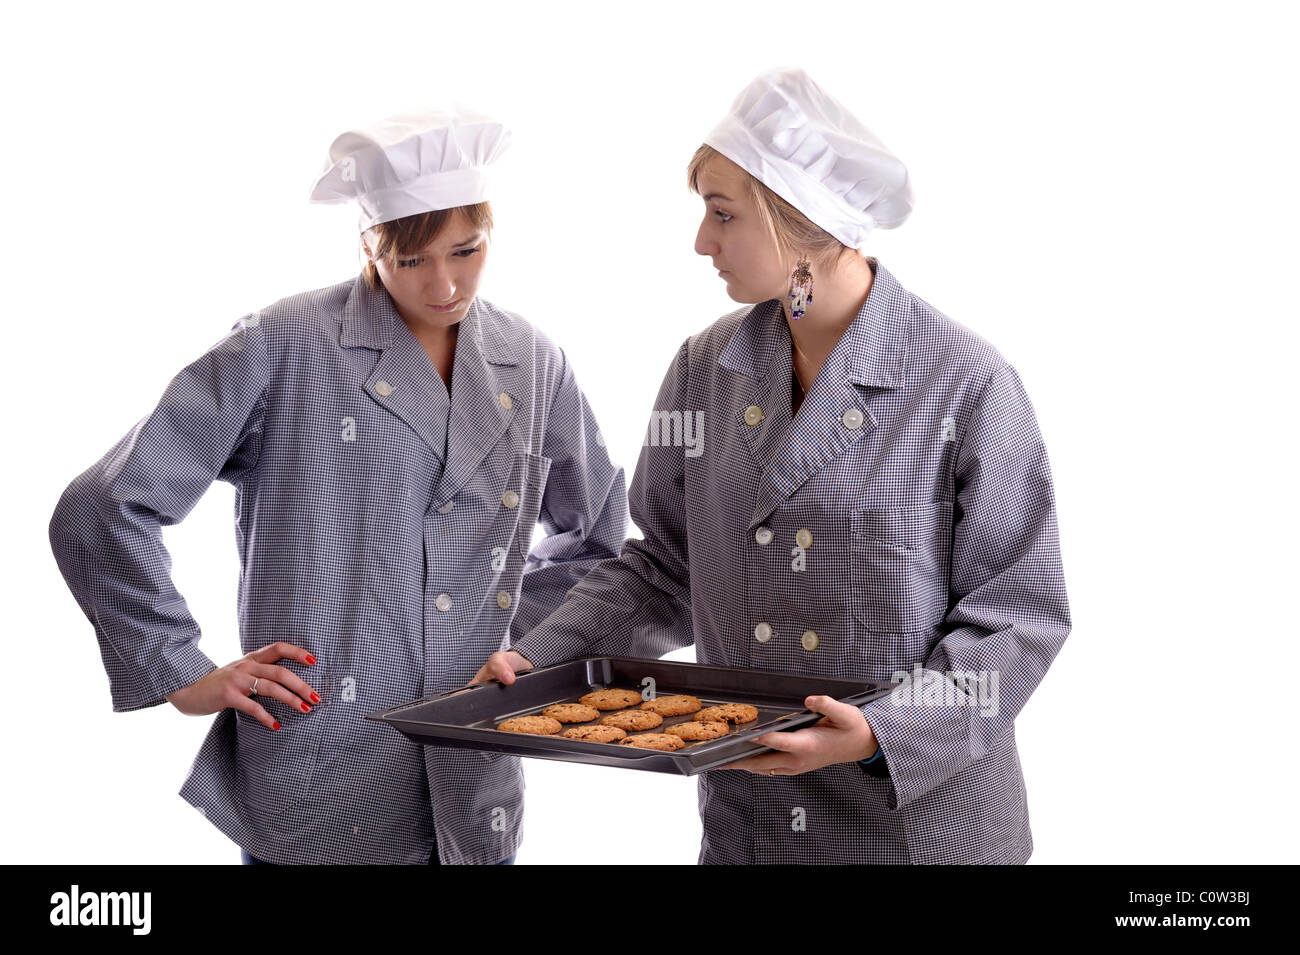 Deux jeunes cuisiniers en vêtements cook l'inspection des cookies sur une plaque. isolated on white Banque D'Images